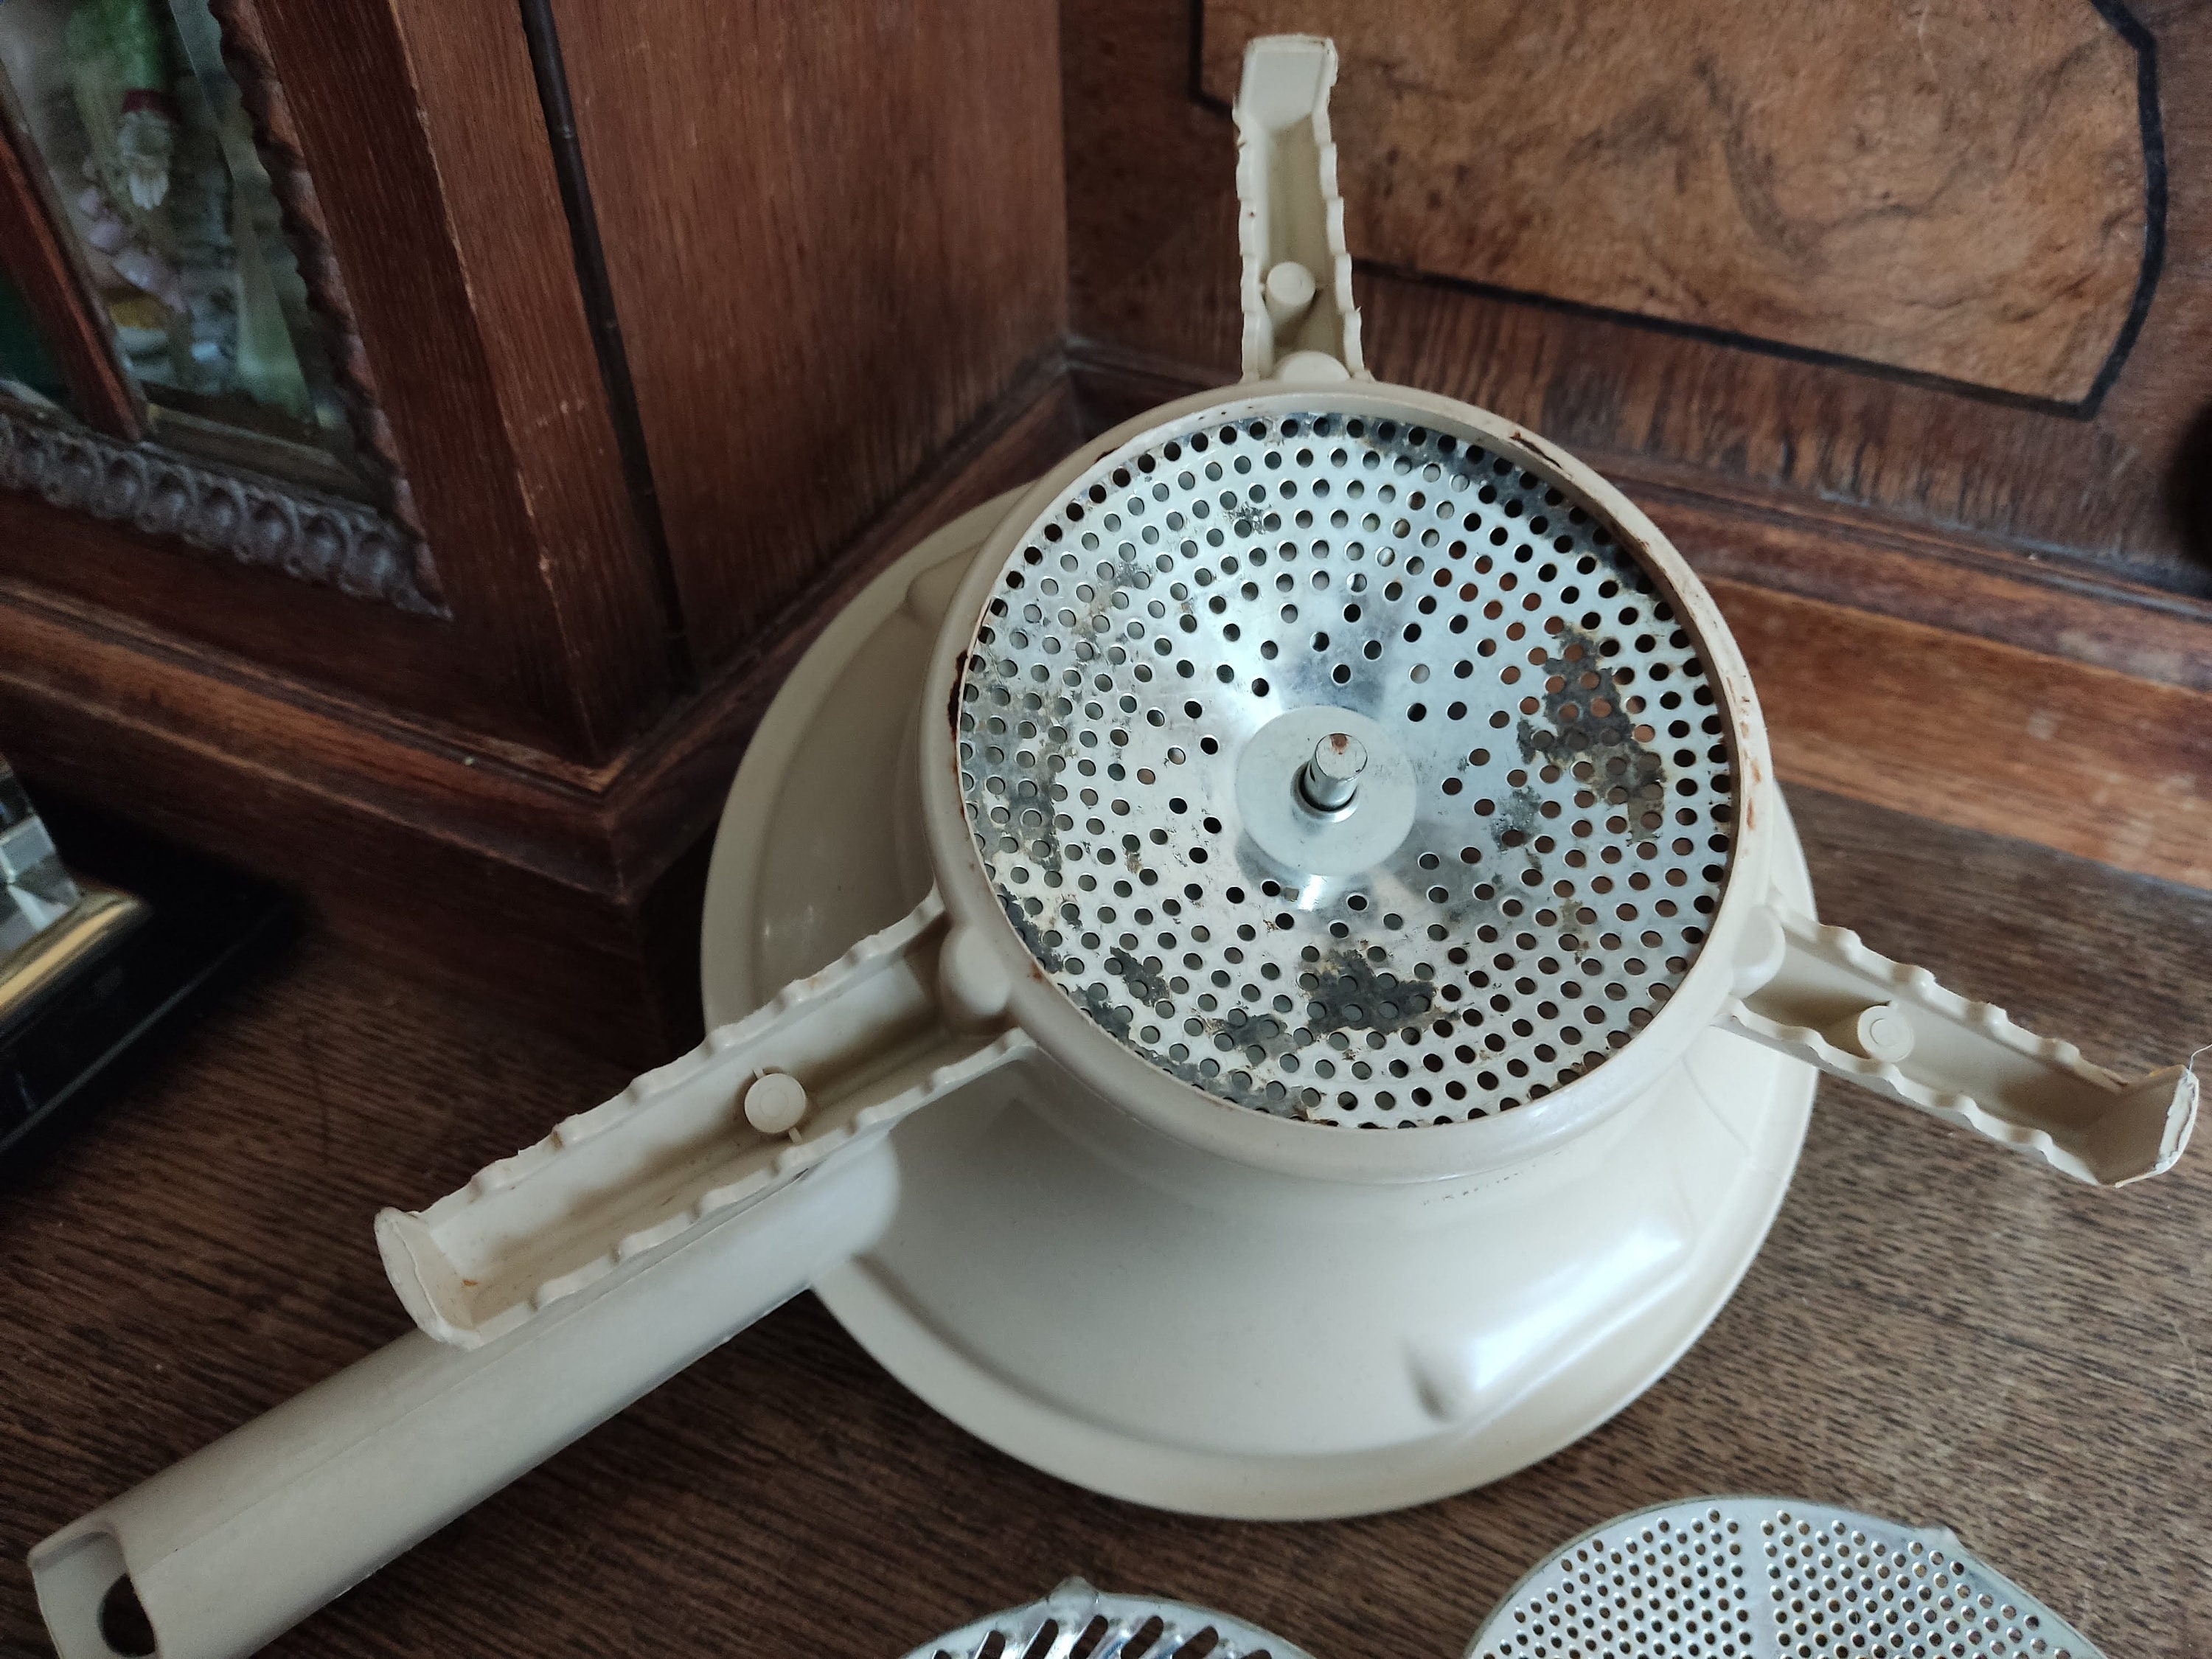 Brocante antique Moulin Legumes vegetables grinder, made by Moulinex, Sold!